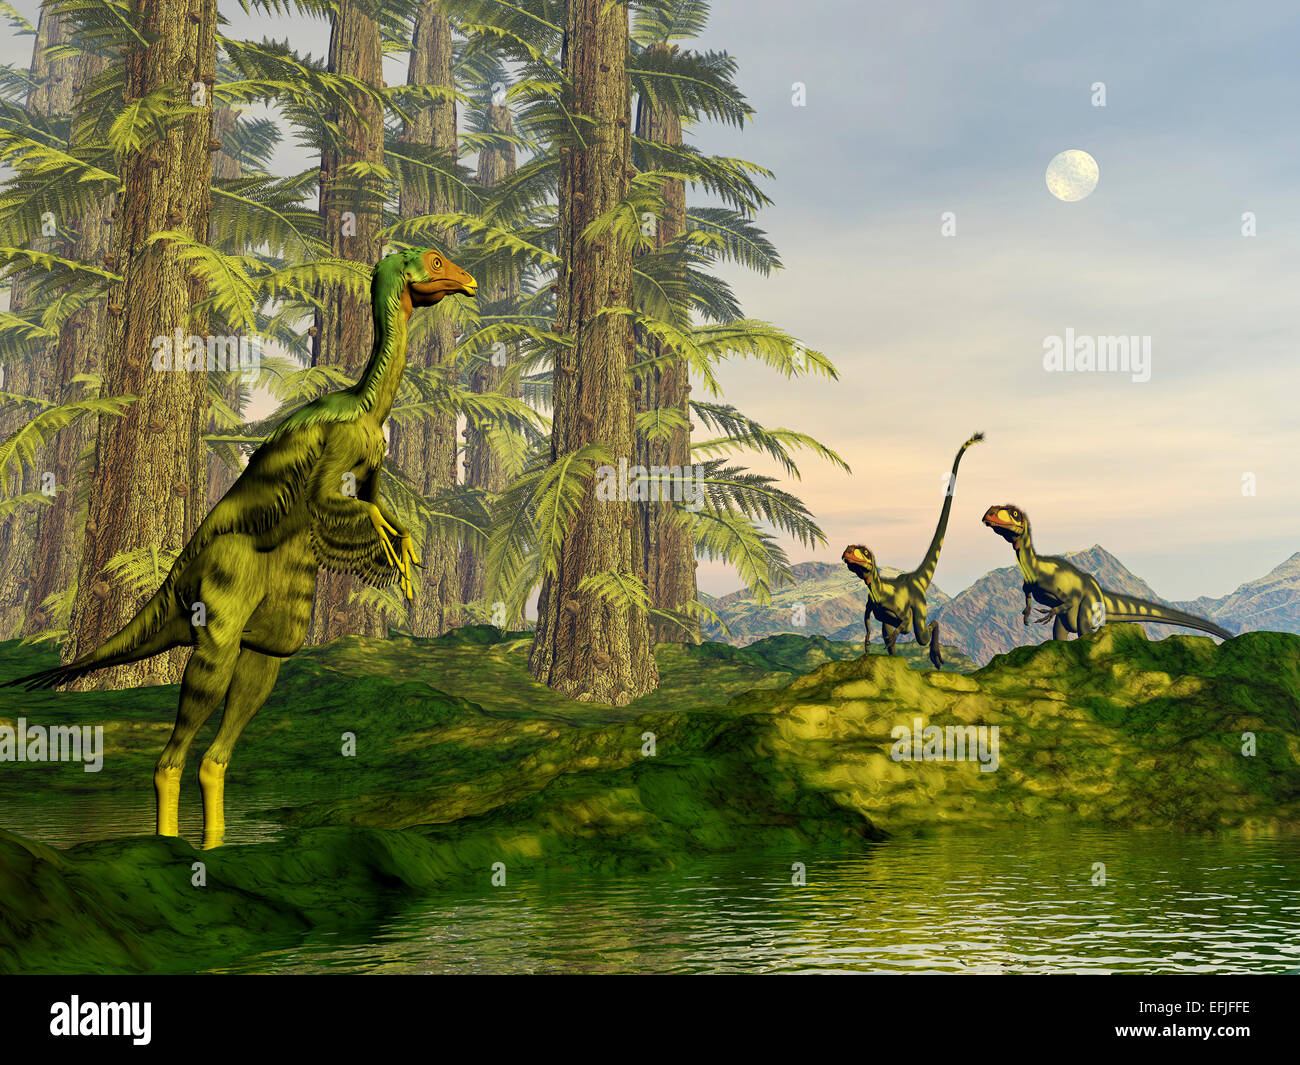 Un Caudipteryx regardant Dilong approche approche dinosaures parmi les arbres Tempskya. Banque D'Images